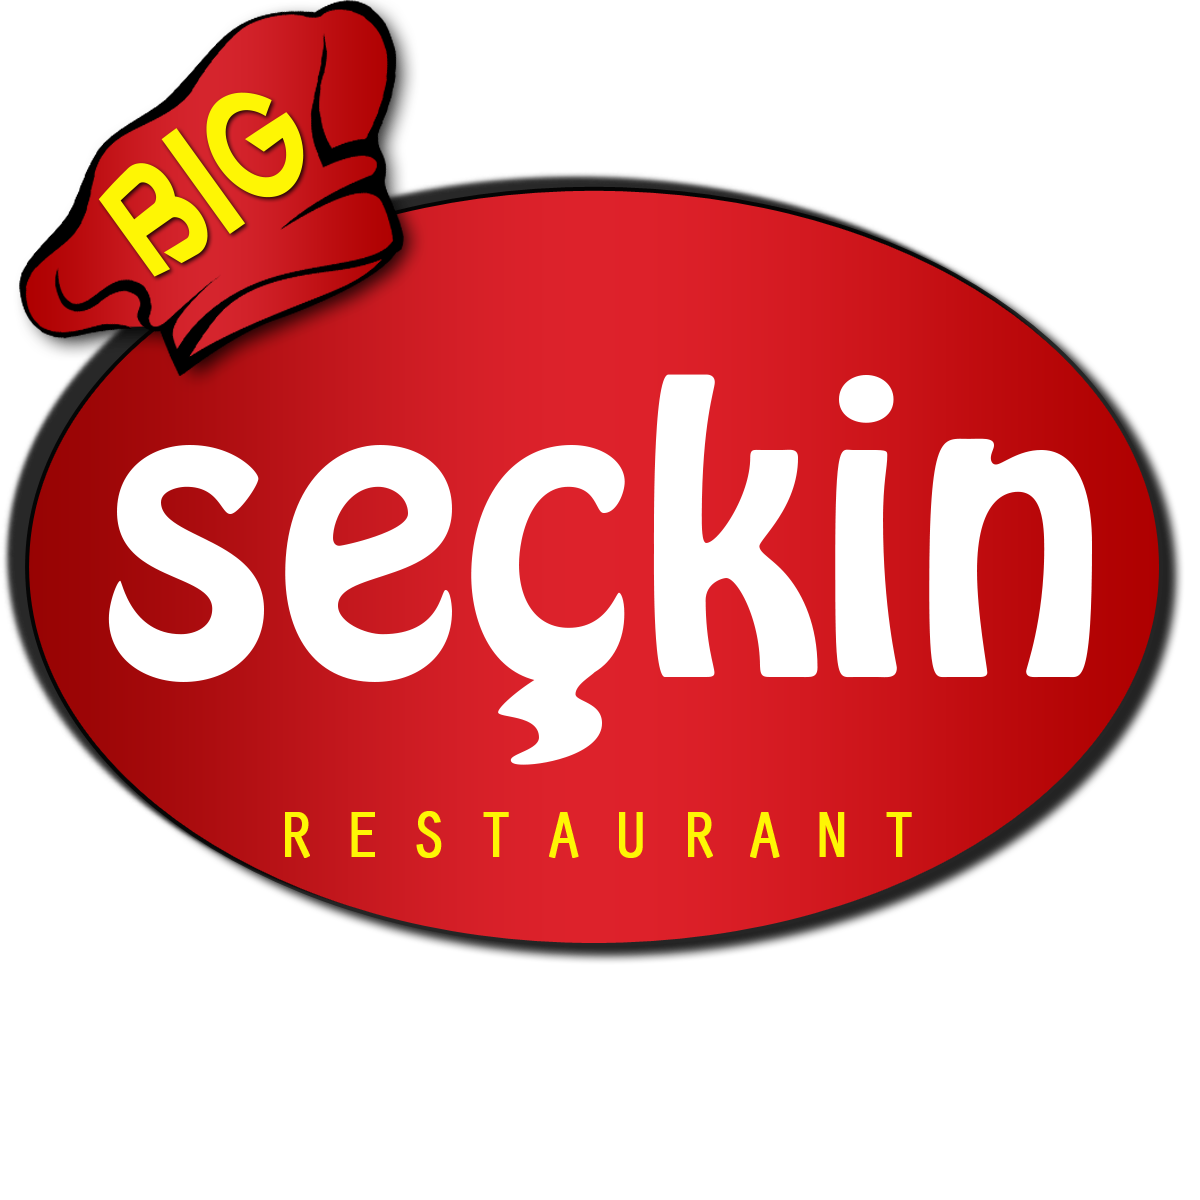 Big Seçkin Restaurant Fethiye